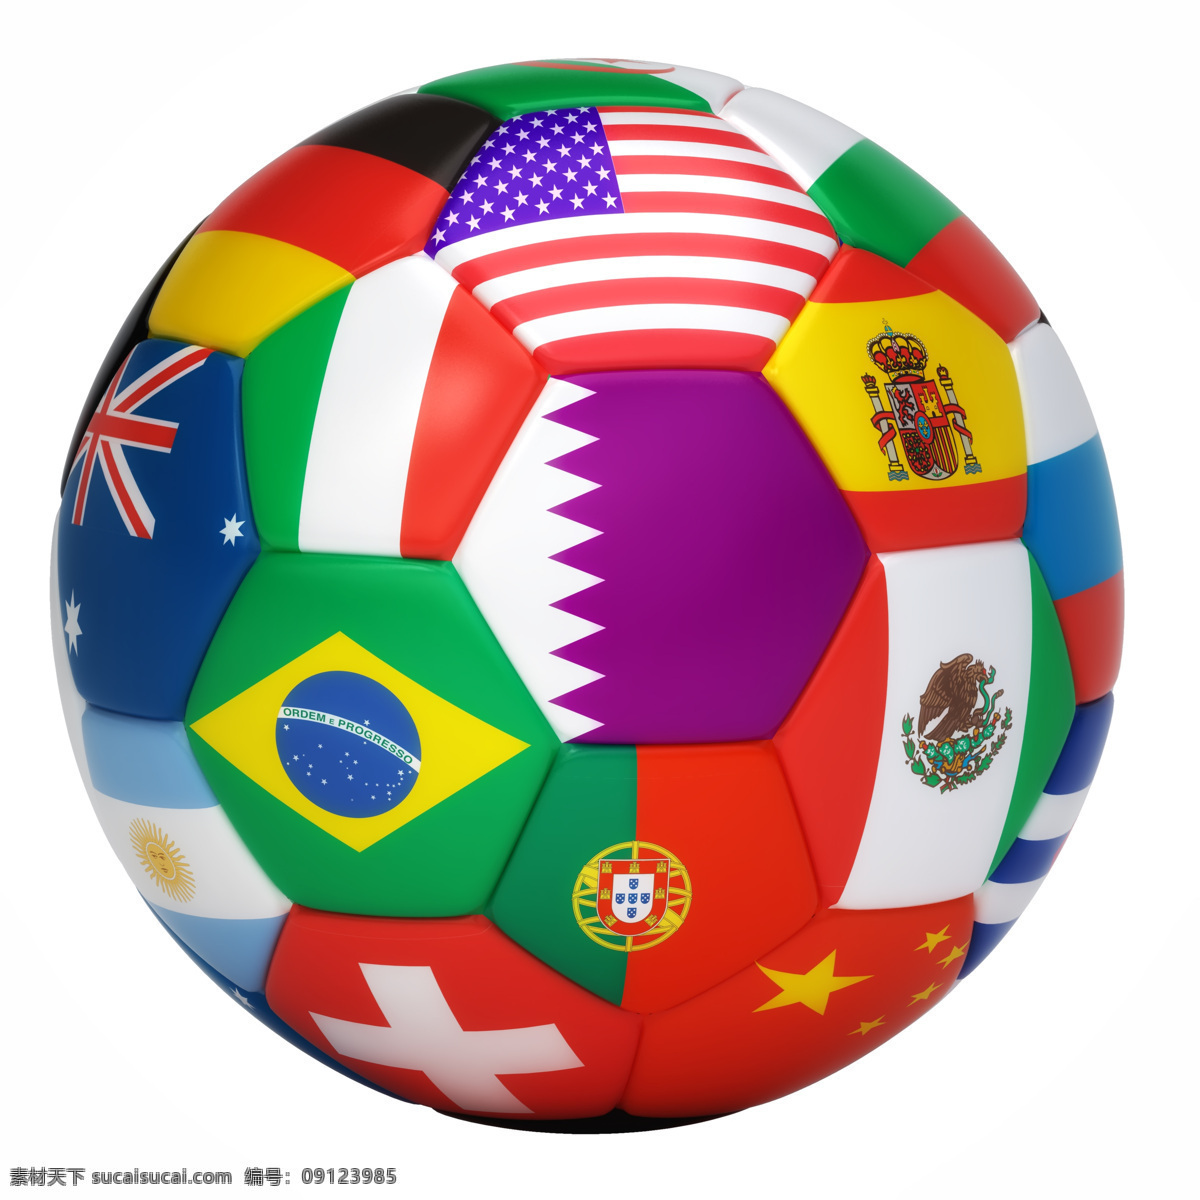 世界杯 足球 国旗足球 球类运动 体育运动 体育项目 生活百科